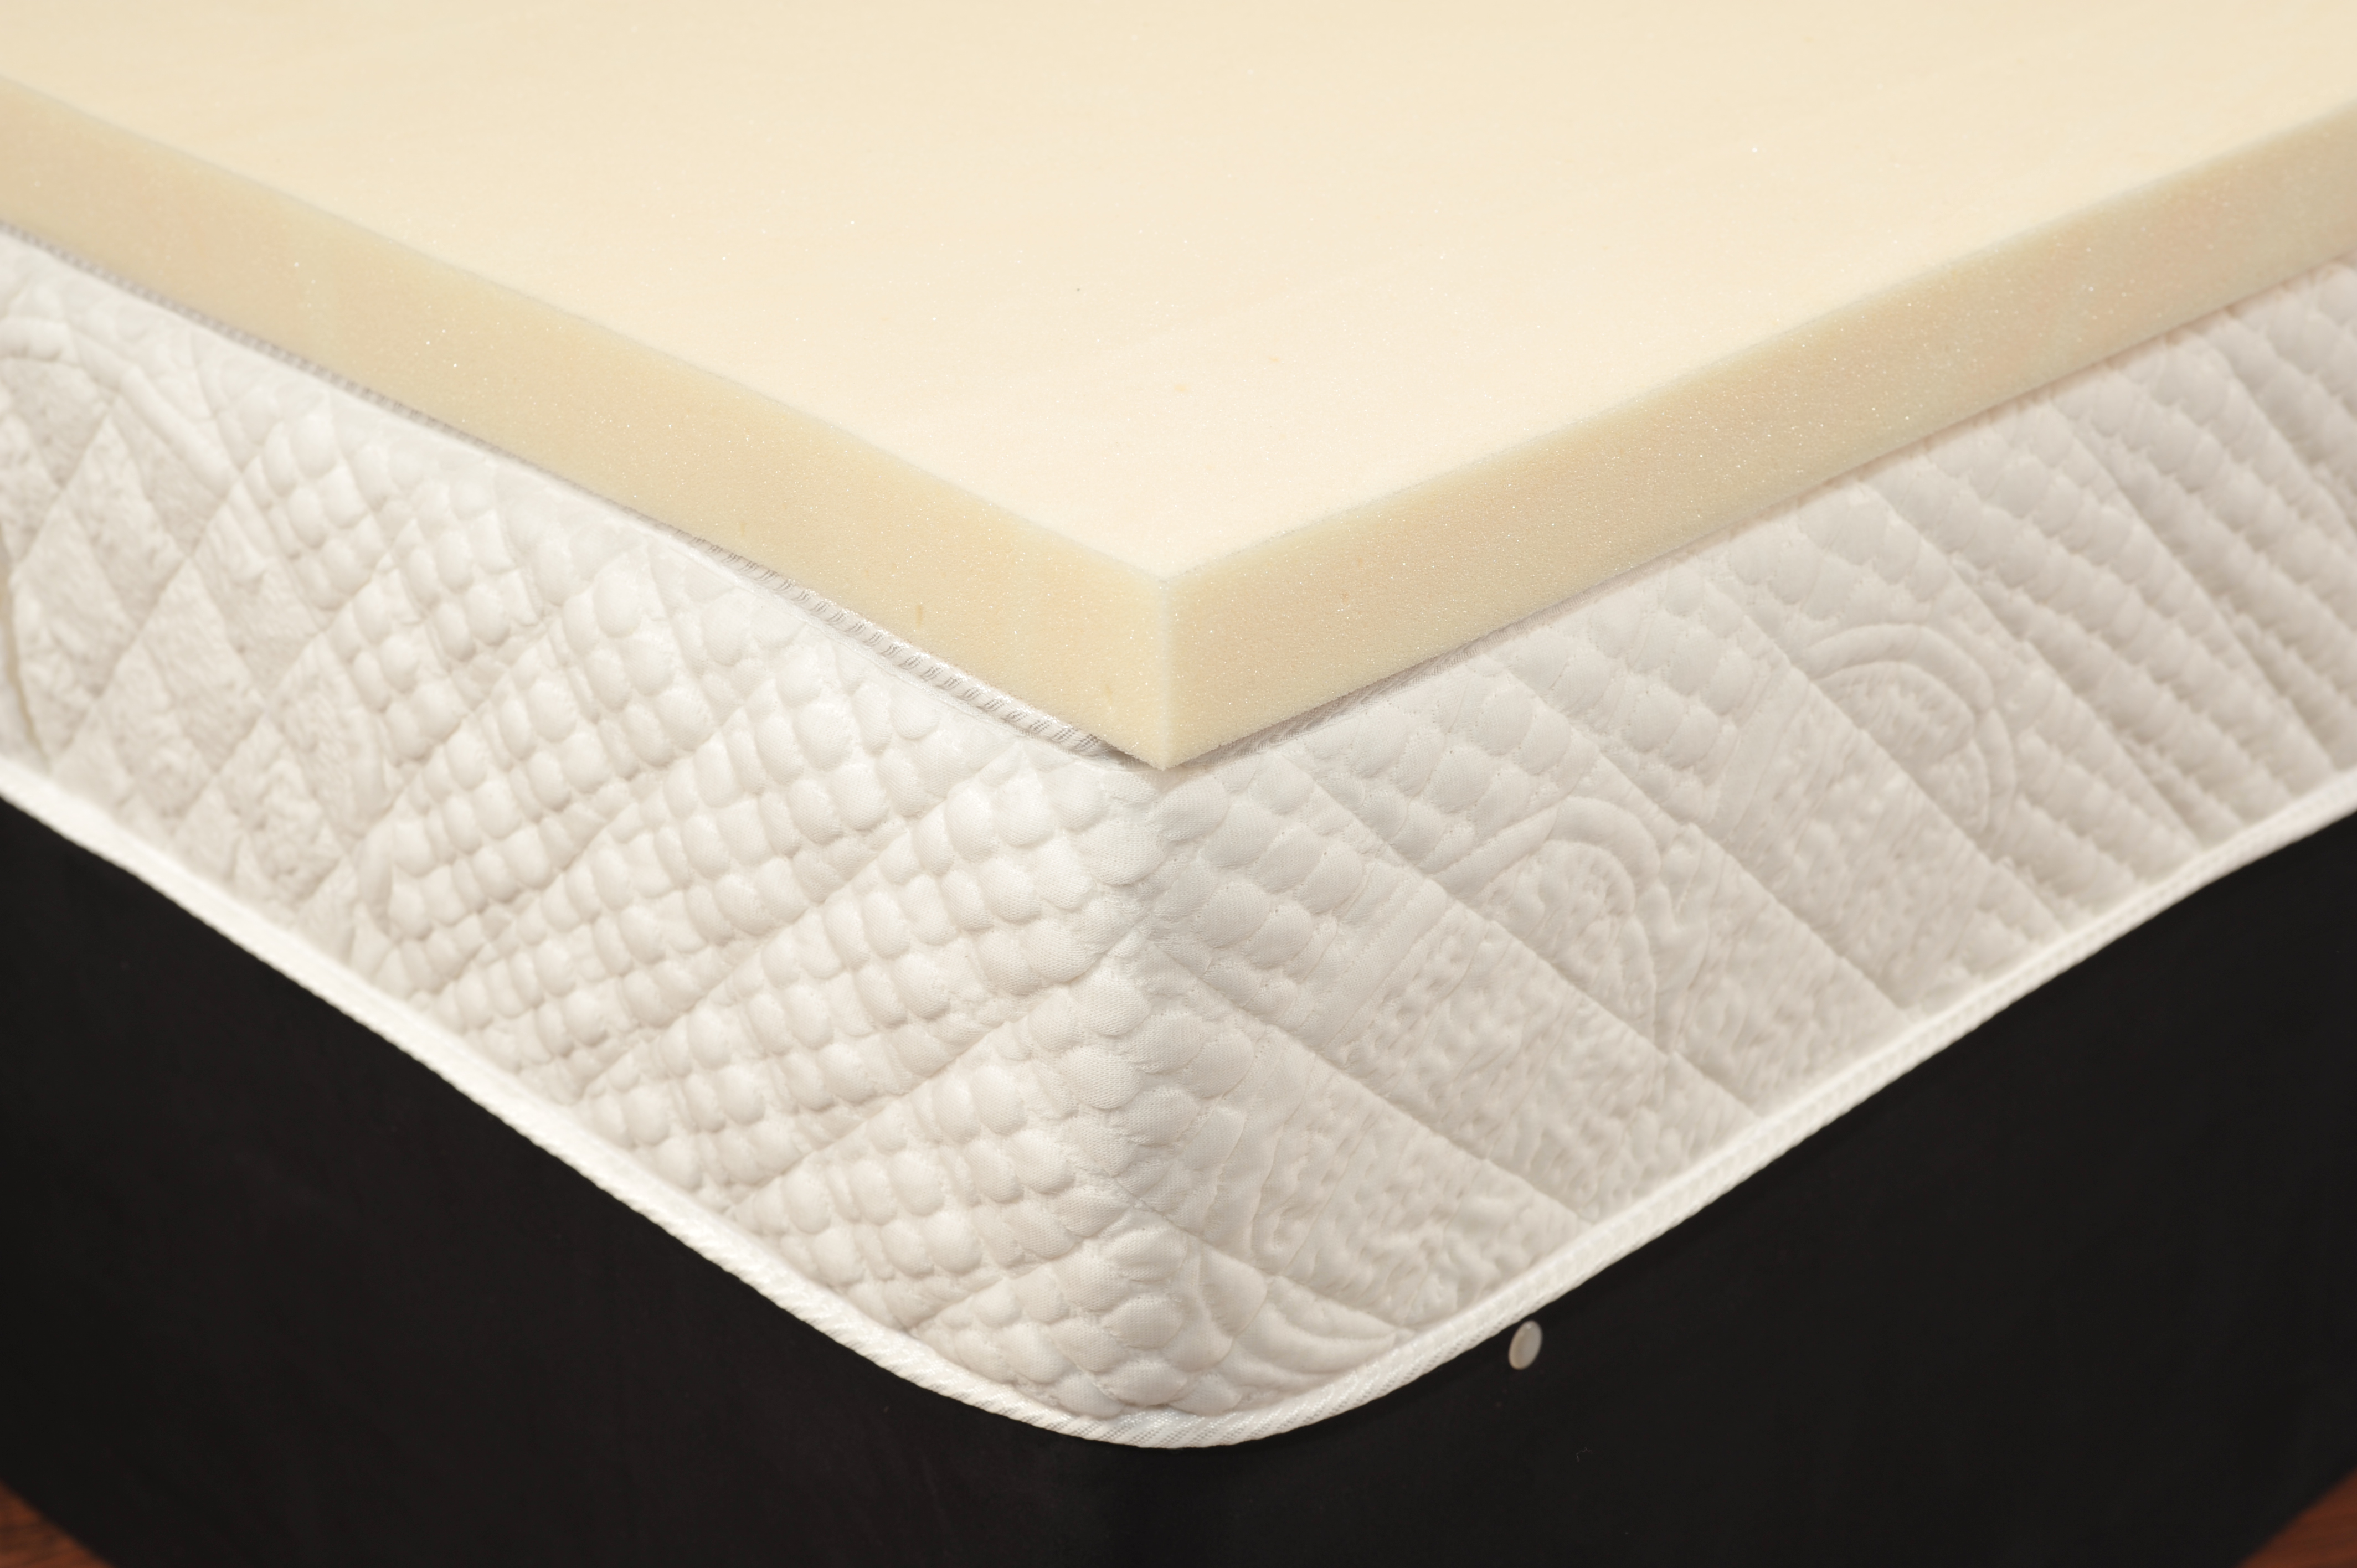 buy single memory foam mattress topper